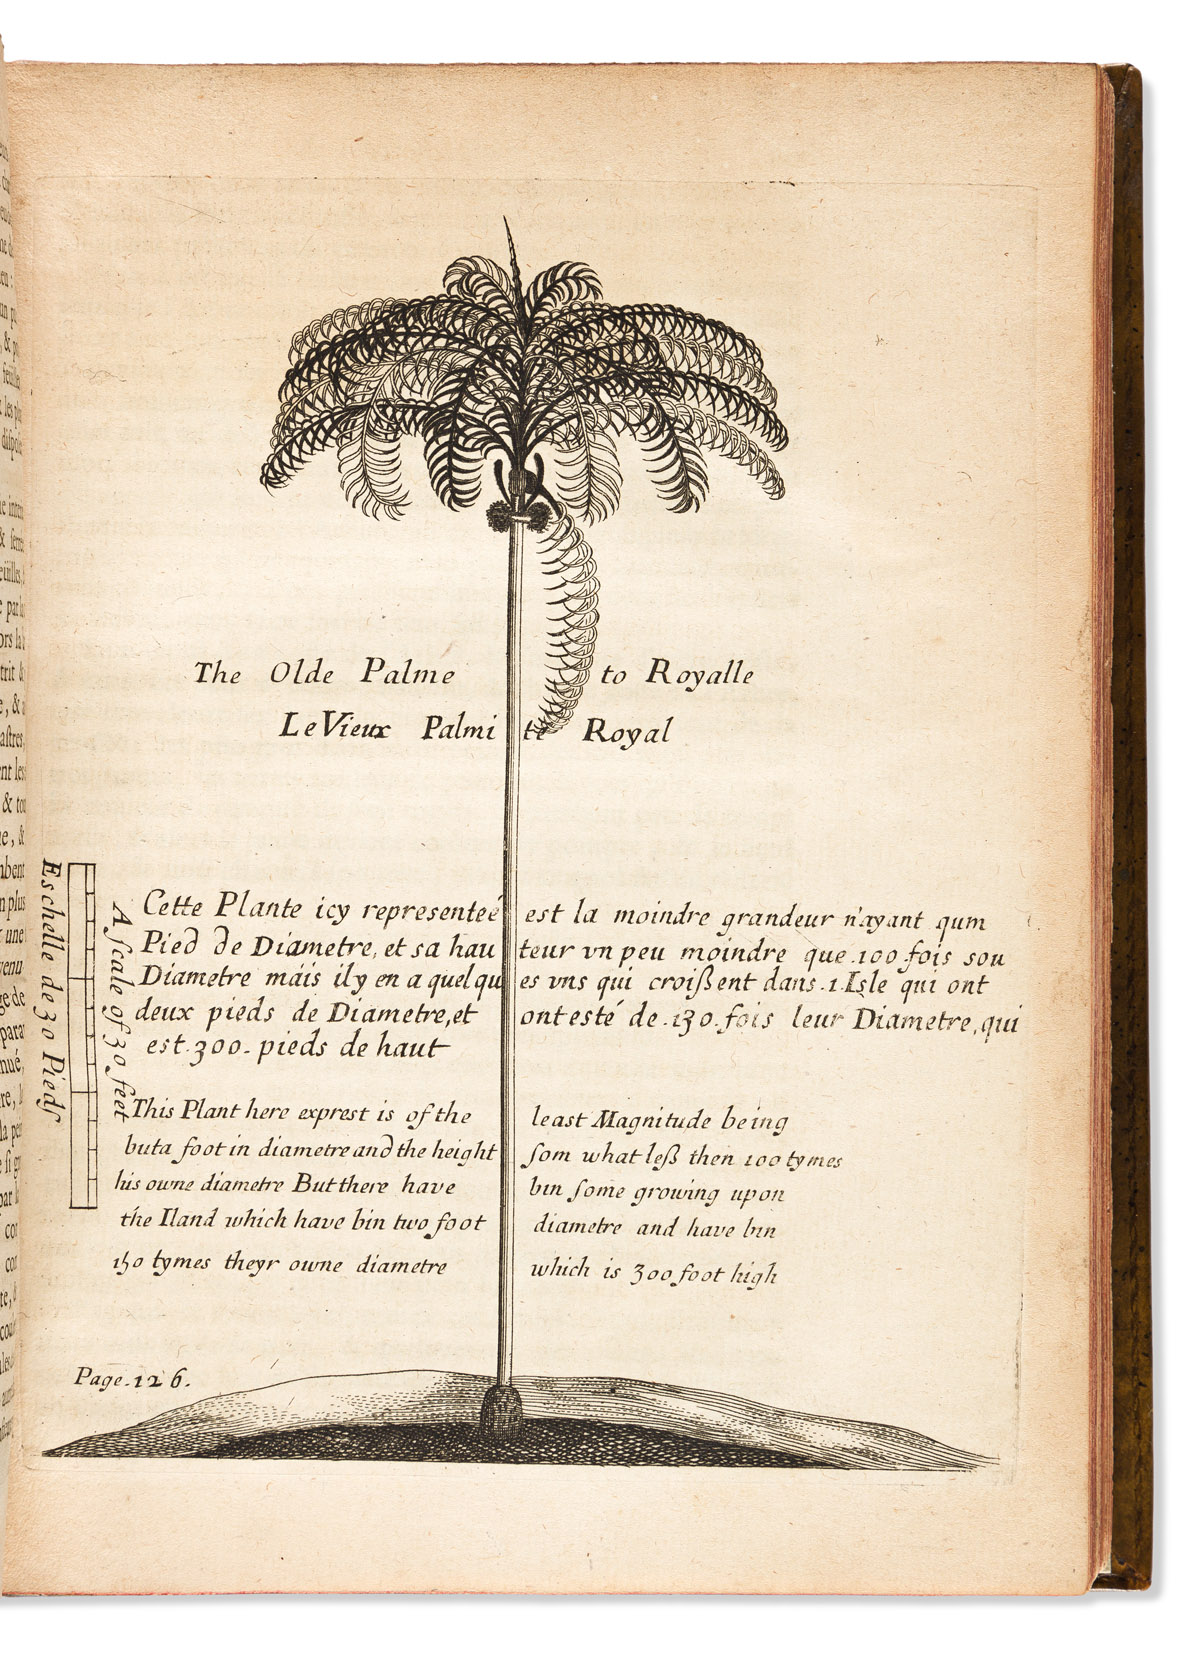 Justel, Henri ed. (1619-1693) Recueil de Divers Voyages Faits en Afrique et en lAmerique.